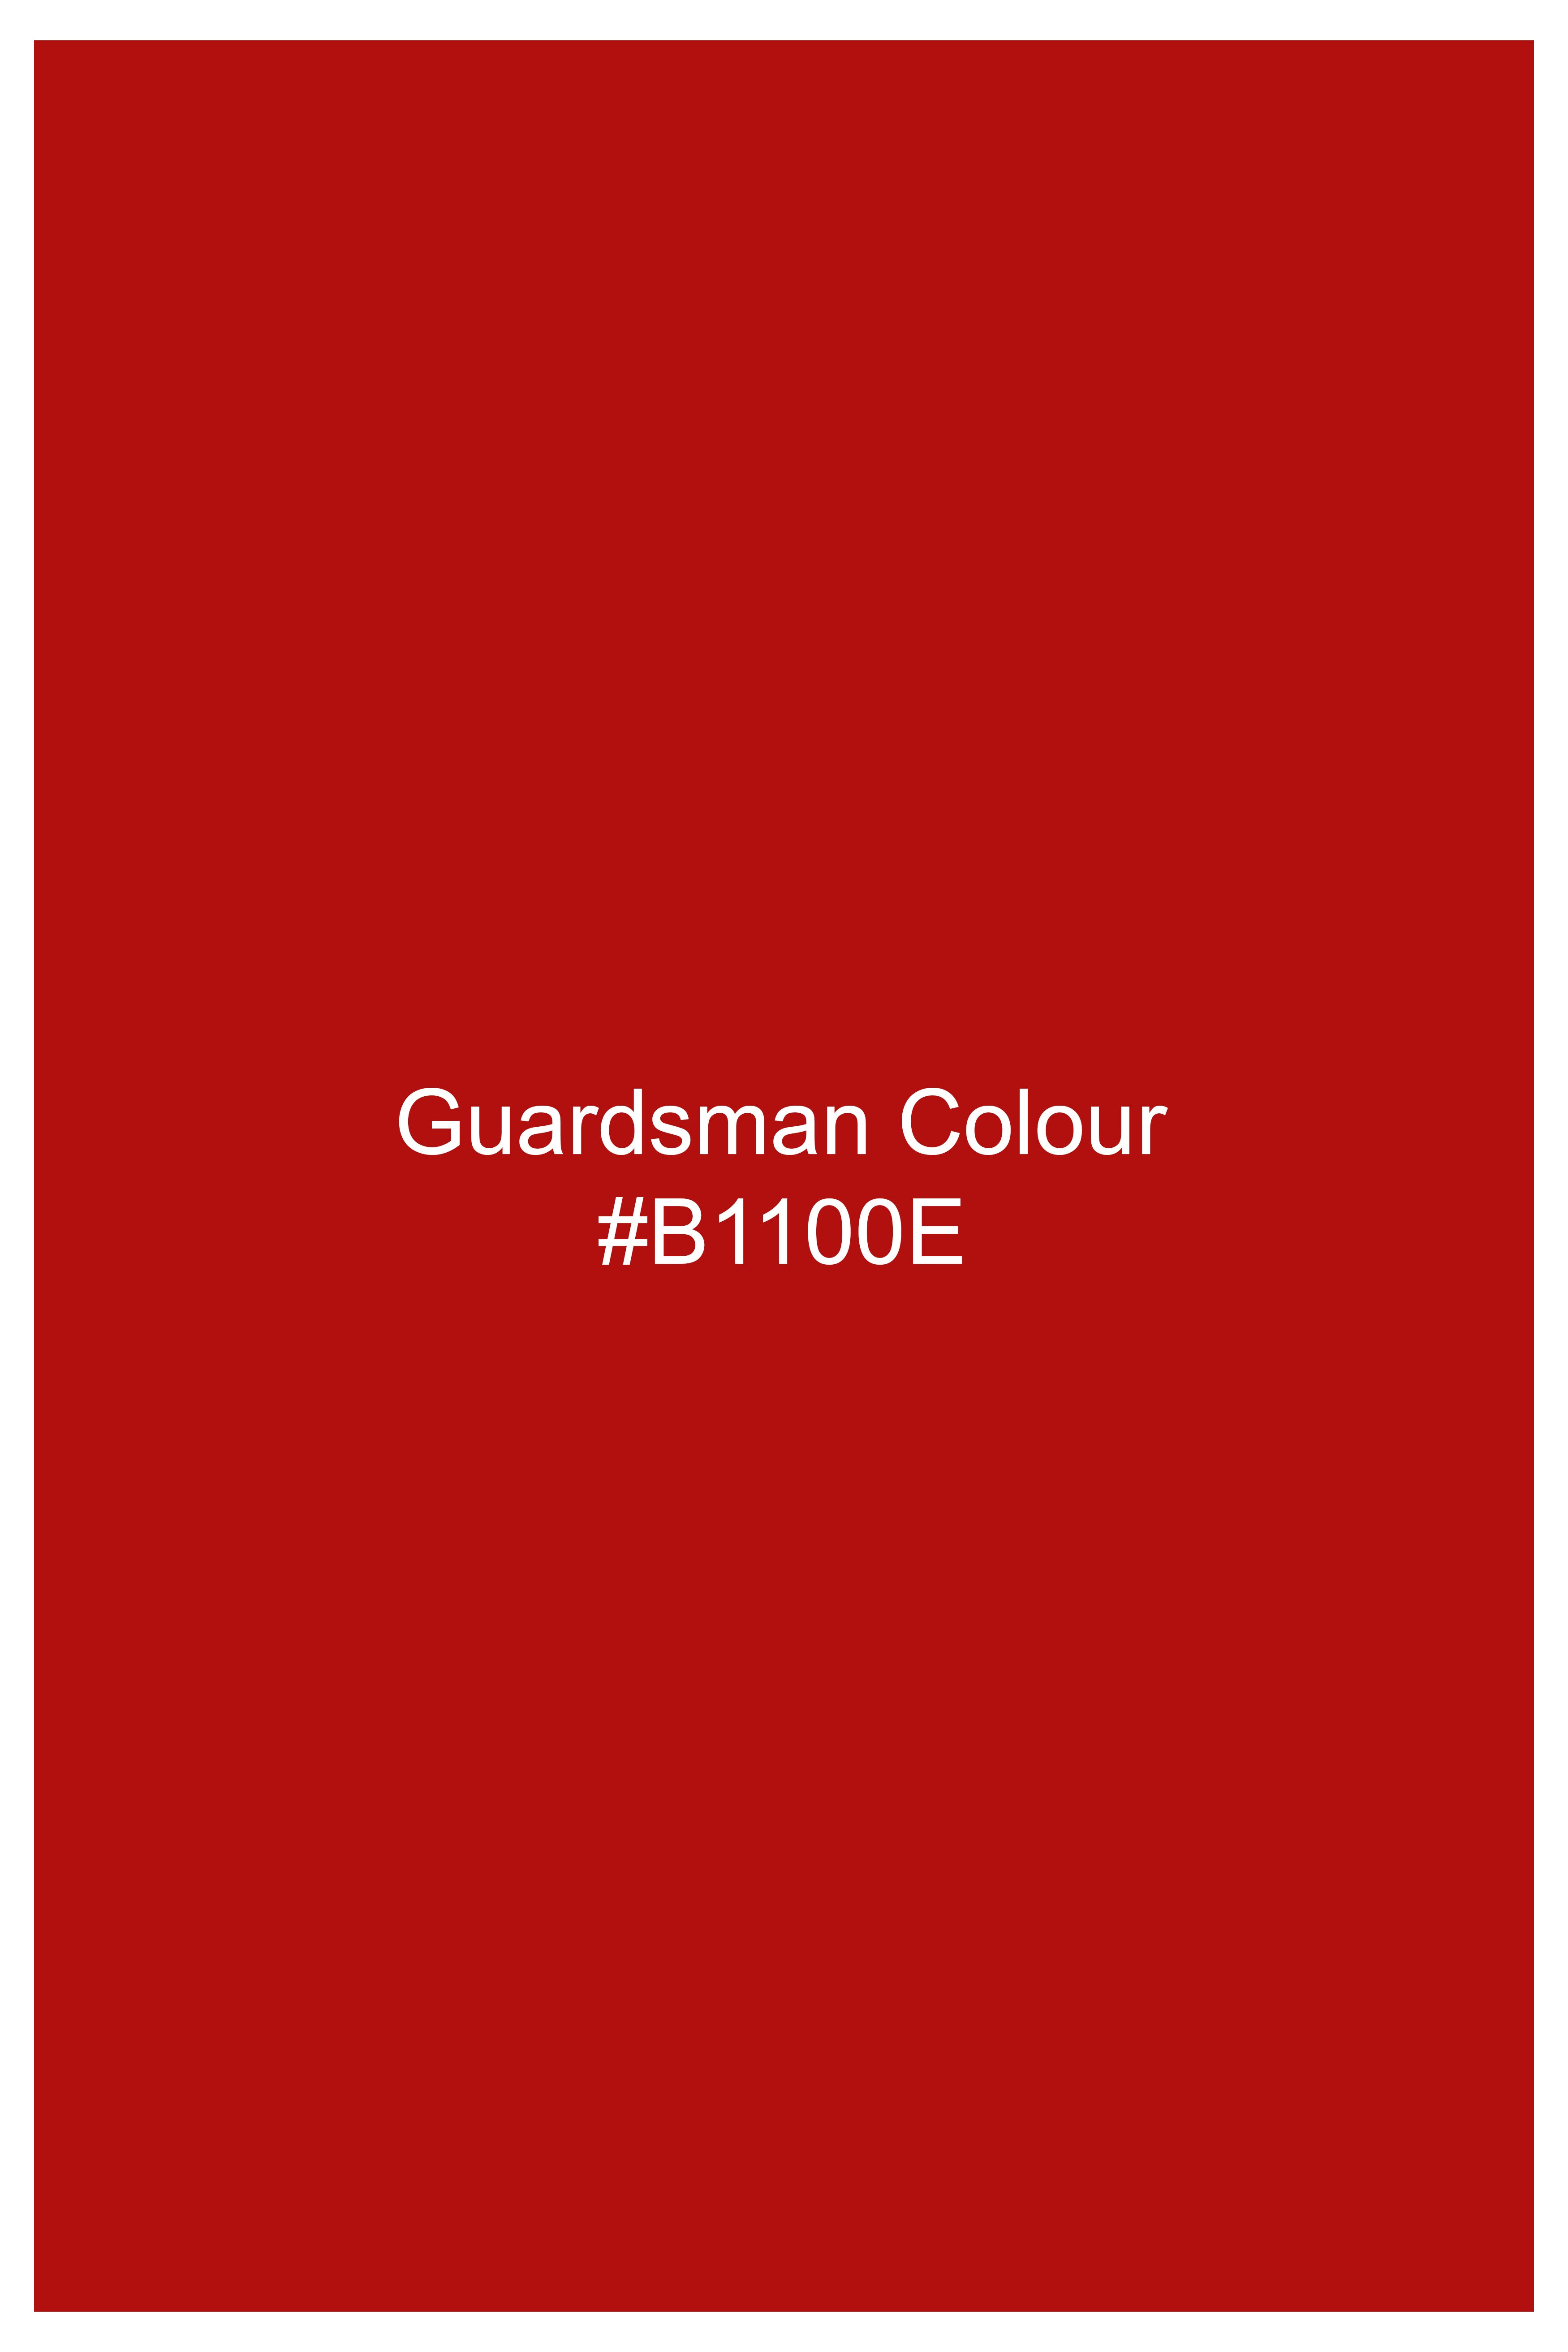 Guardsman Red Premium Cotton Pique Polo TS927-S, TS927-M, TS927-L, TS927-XL, TS927-XXL3